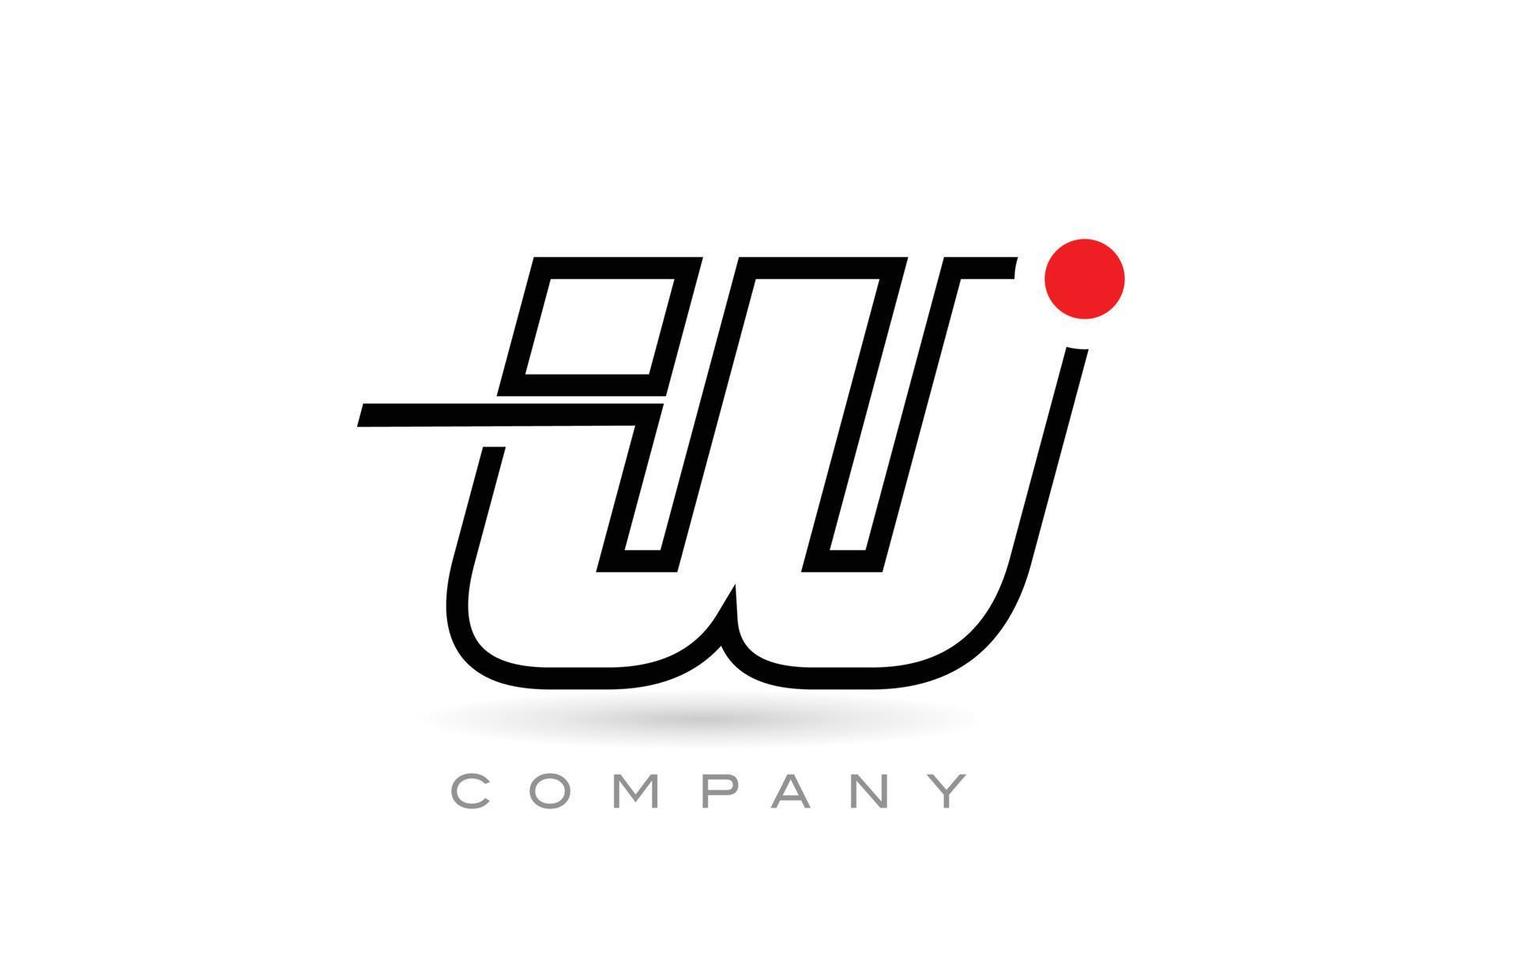 diseño simple del icono del logotipo de la letra del alfabeto w con línea y punto rojo. plantilla creativa para empresa y negocio vector